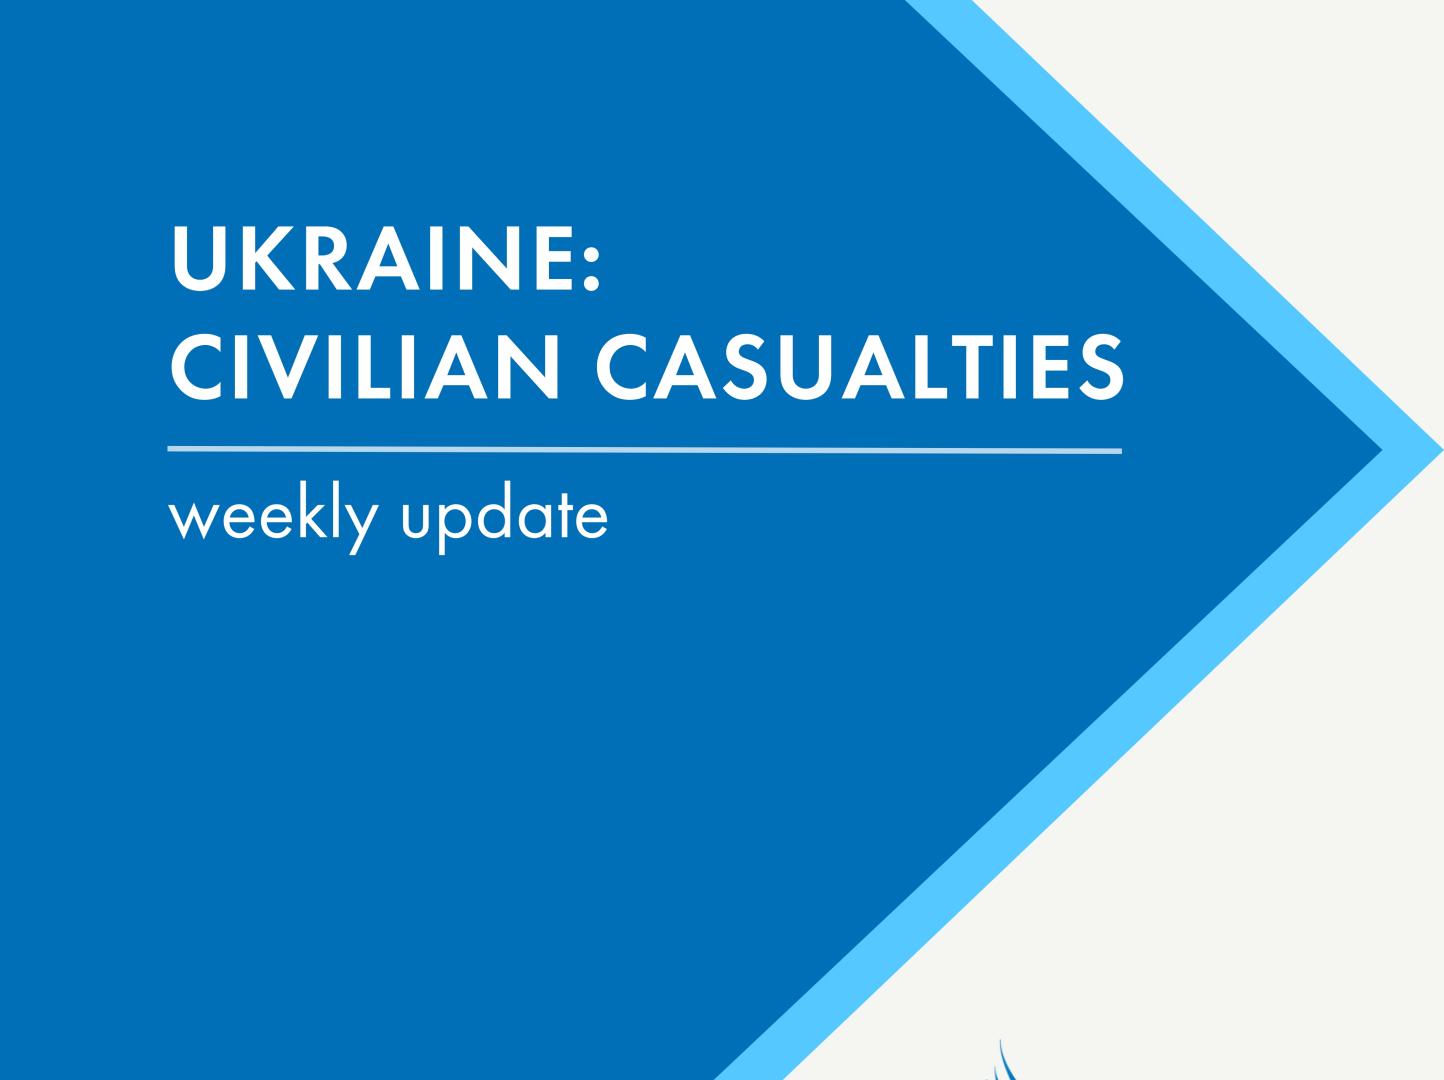 Ukraine: Civilian casualties weekly update